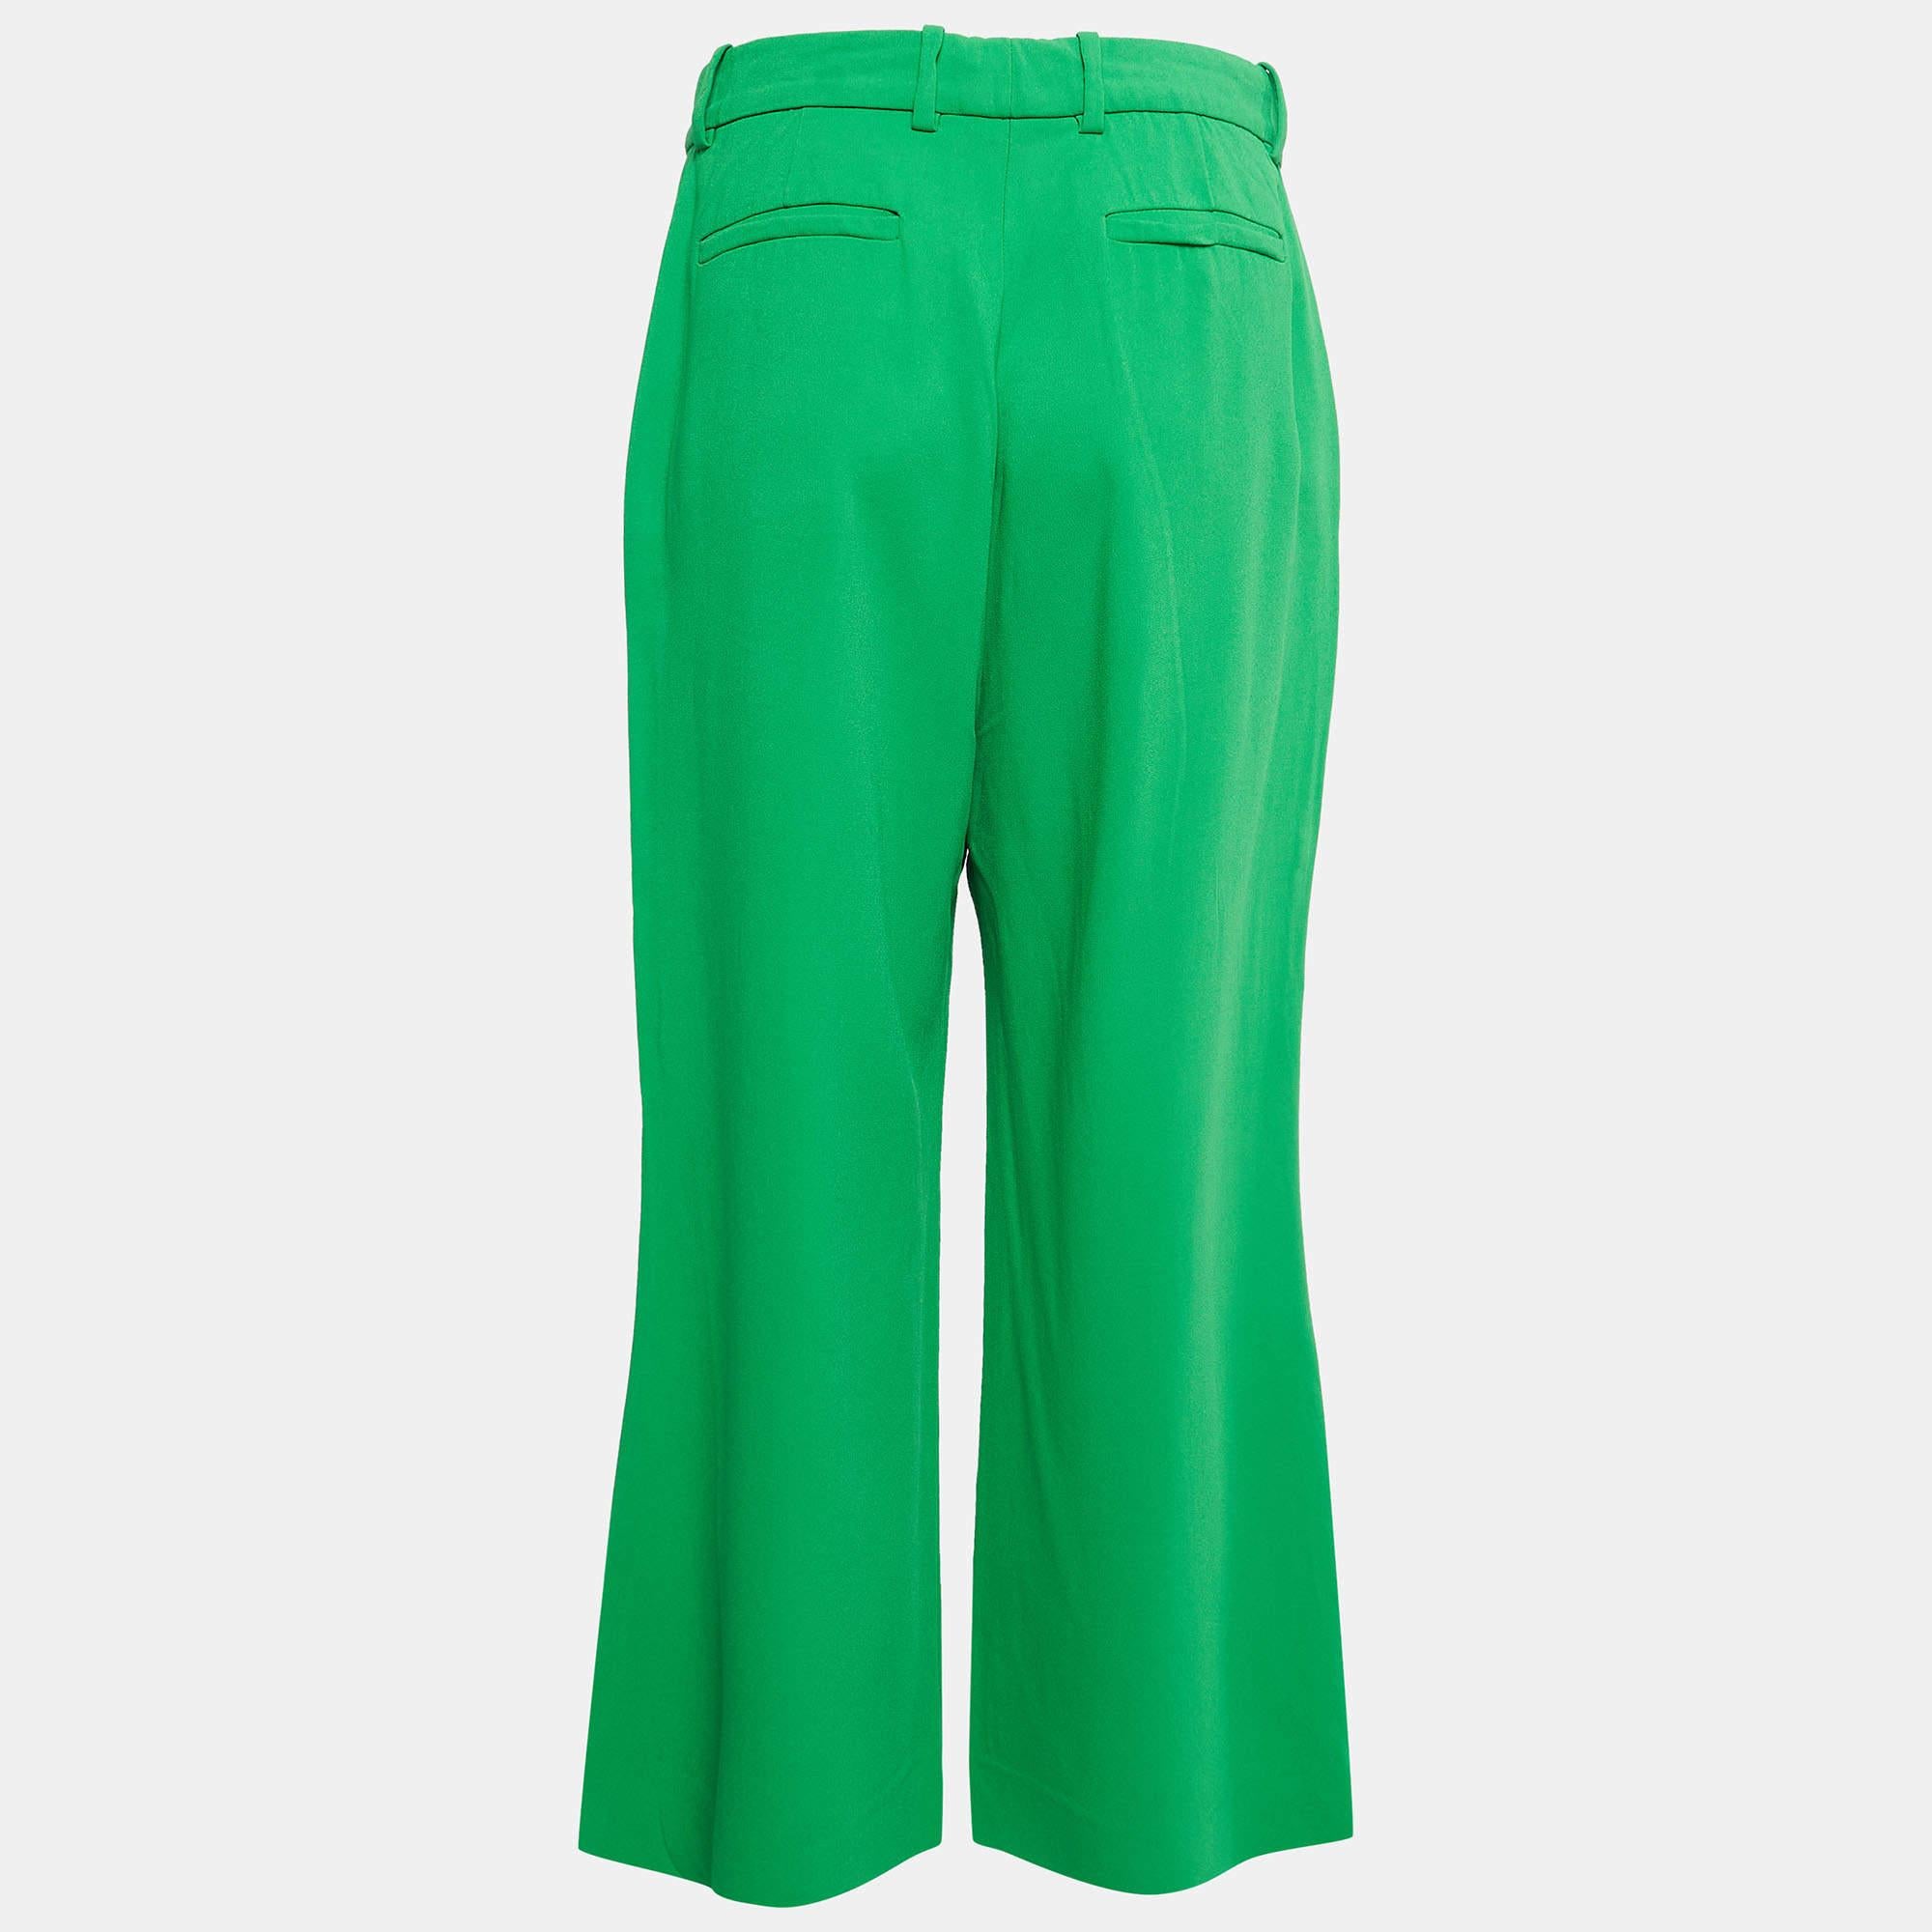 Die Culotte-Hose von Gucci strahlt mit ihrer taillierten Silhouette und dem leuchtenden Grün Raffinesse aus. Sie sind aus hochwertigem Stretch-Crêpe-Stoff gefertigt und verfügen über ein schmeichelhaftes weites Bein und stilvolle Knopfdetails, die